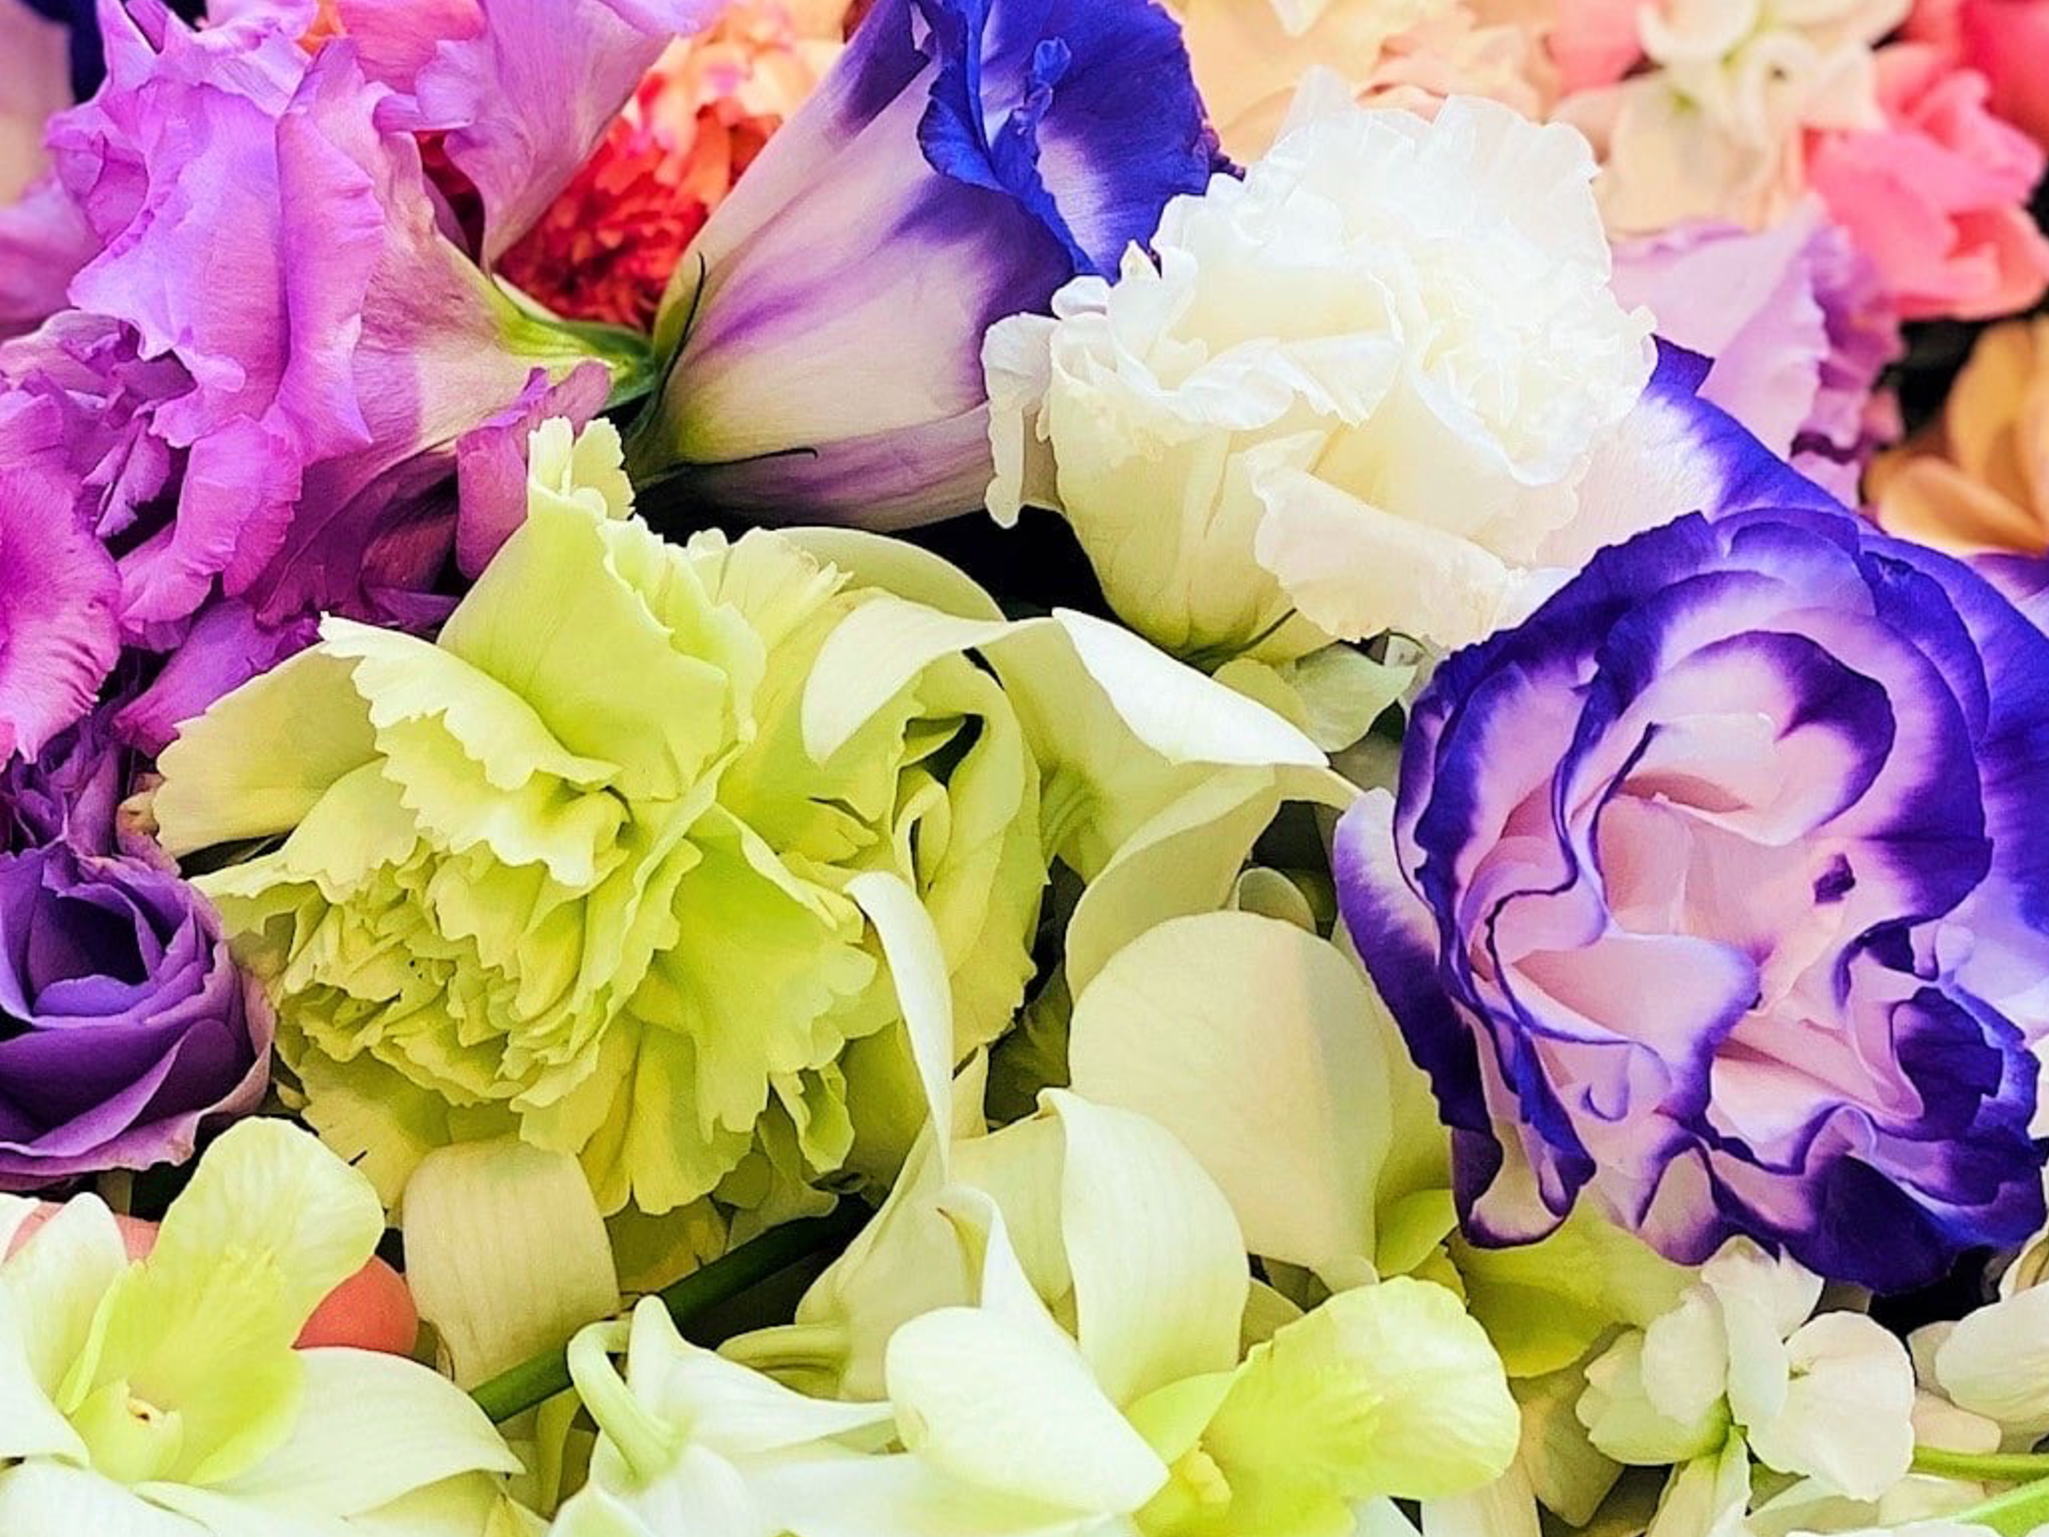 格安から品質高い綺麗な花々で見送る葬儀まで丁寧にご案内致します。